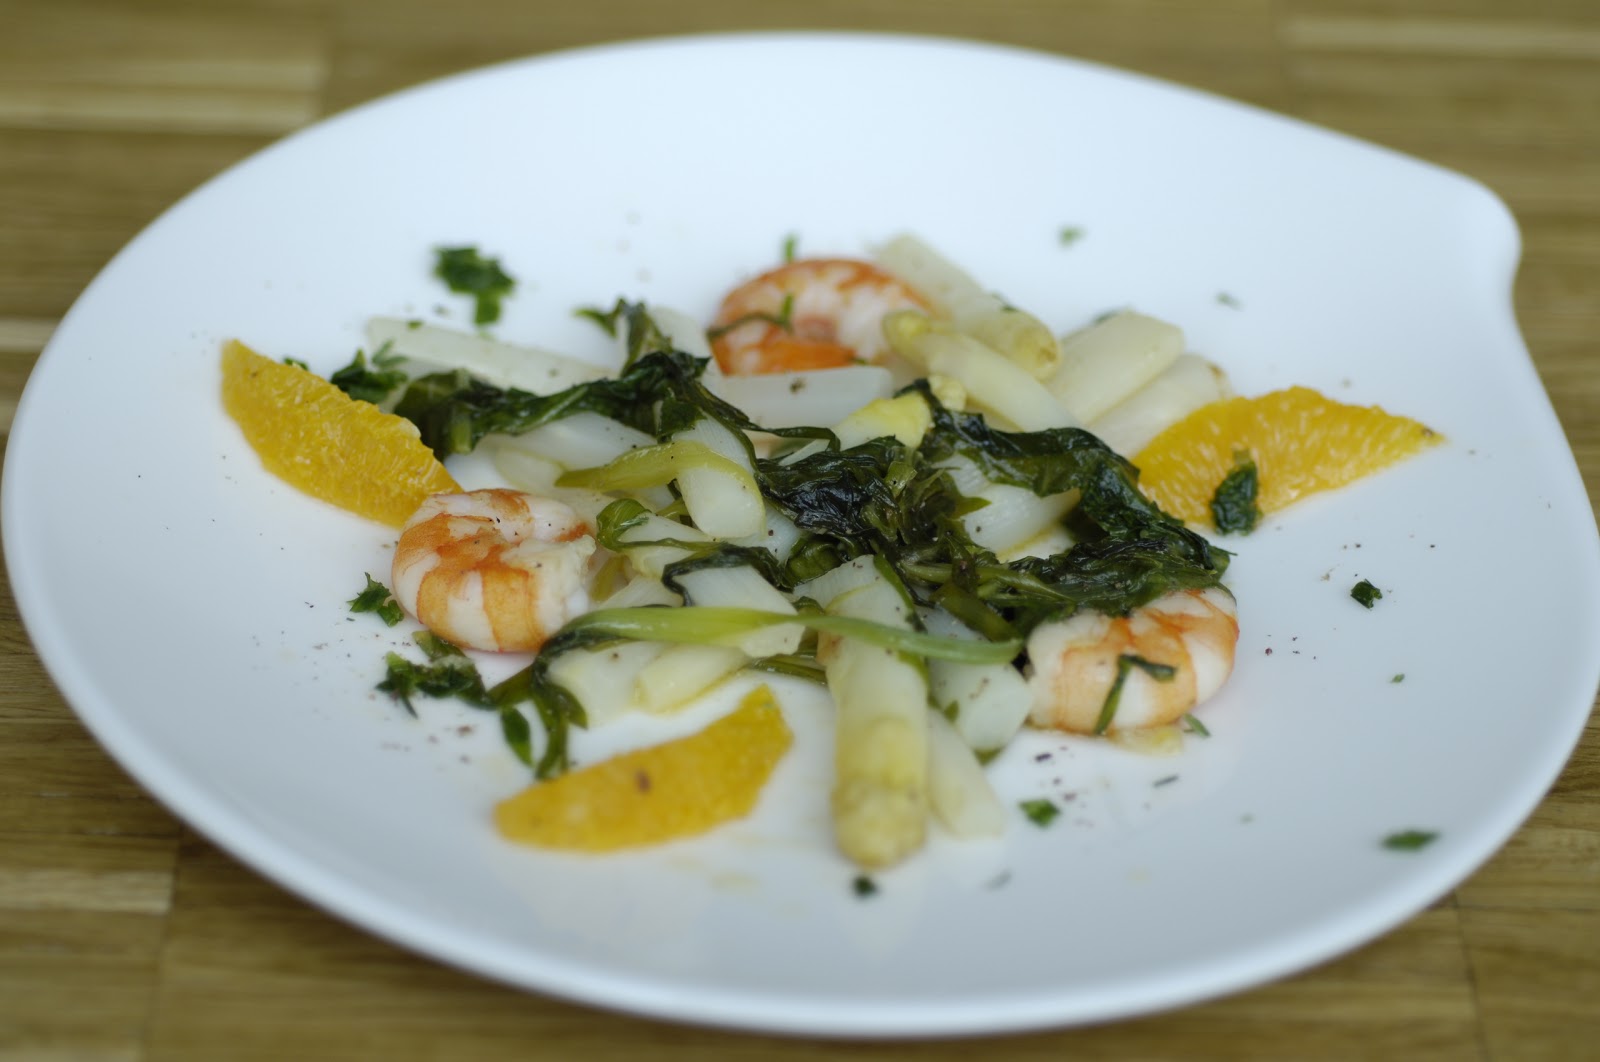 jinja kocht: Lauwarmer Spargelsalat mit Spinat und Garnelen